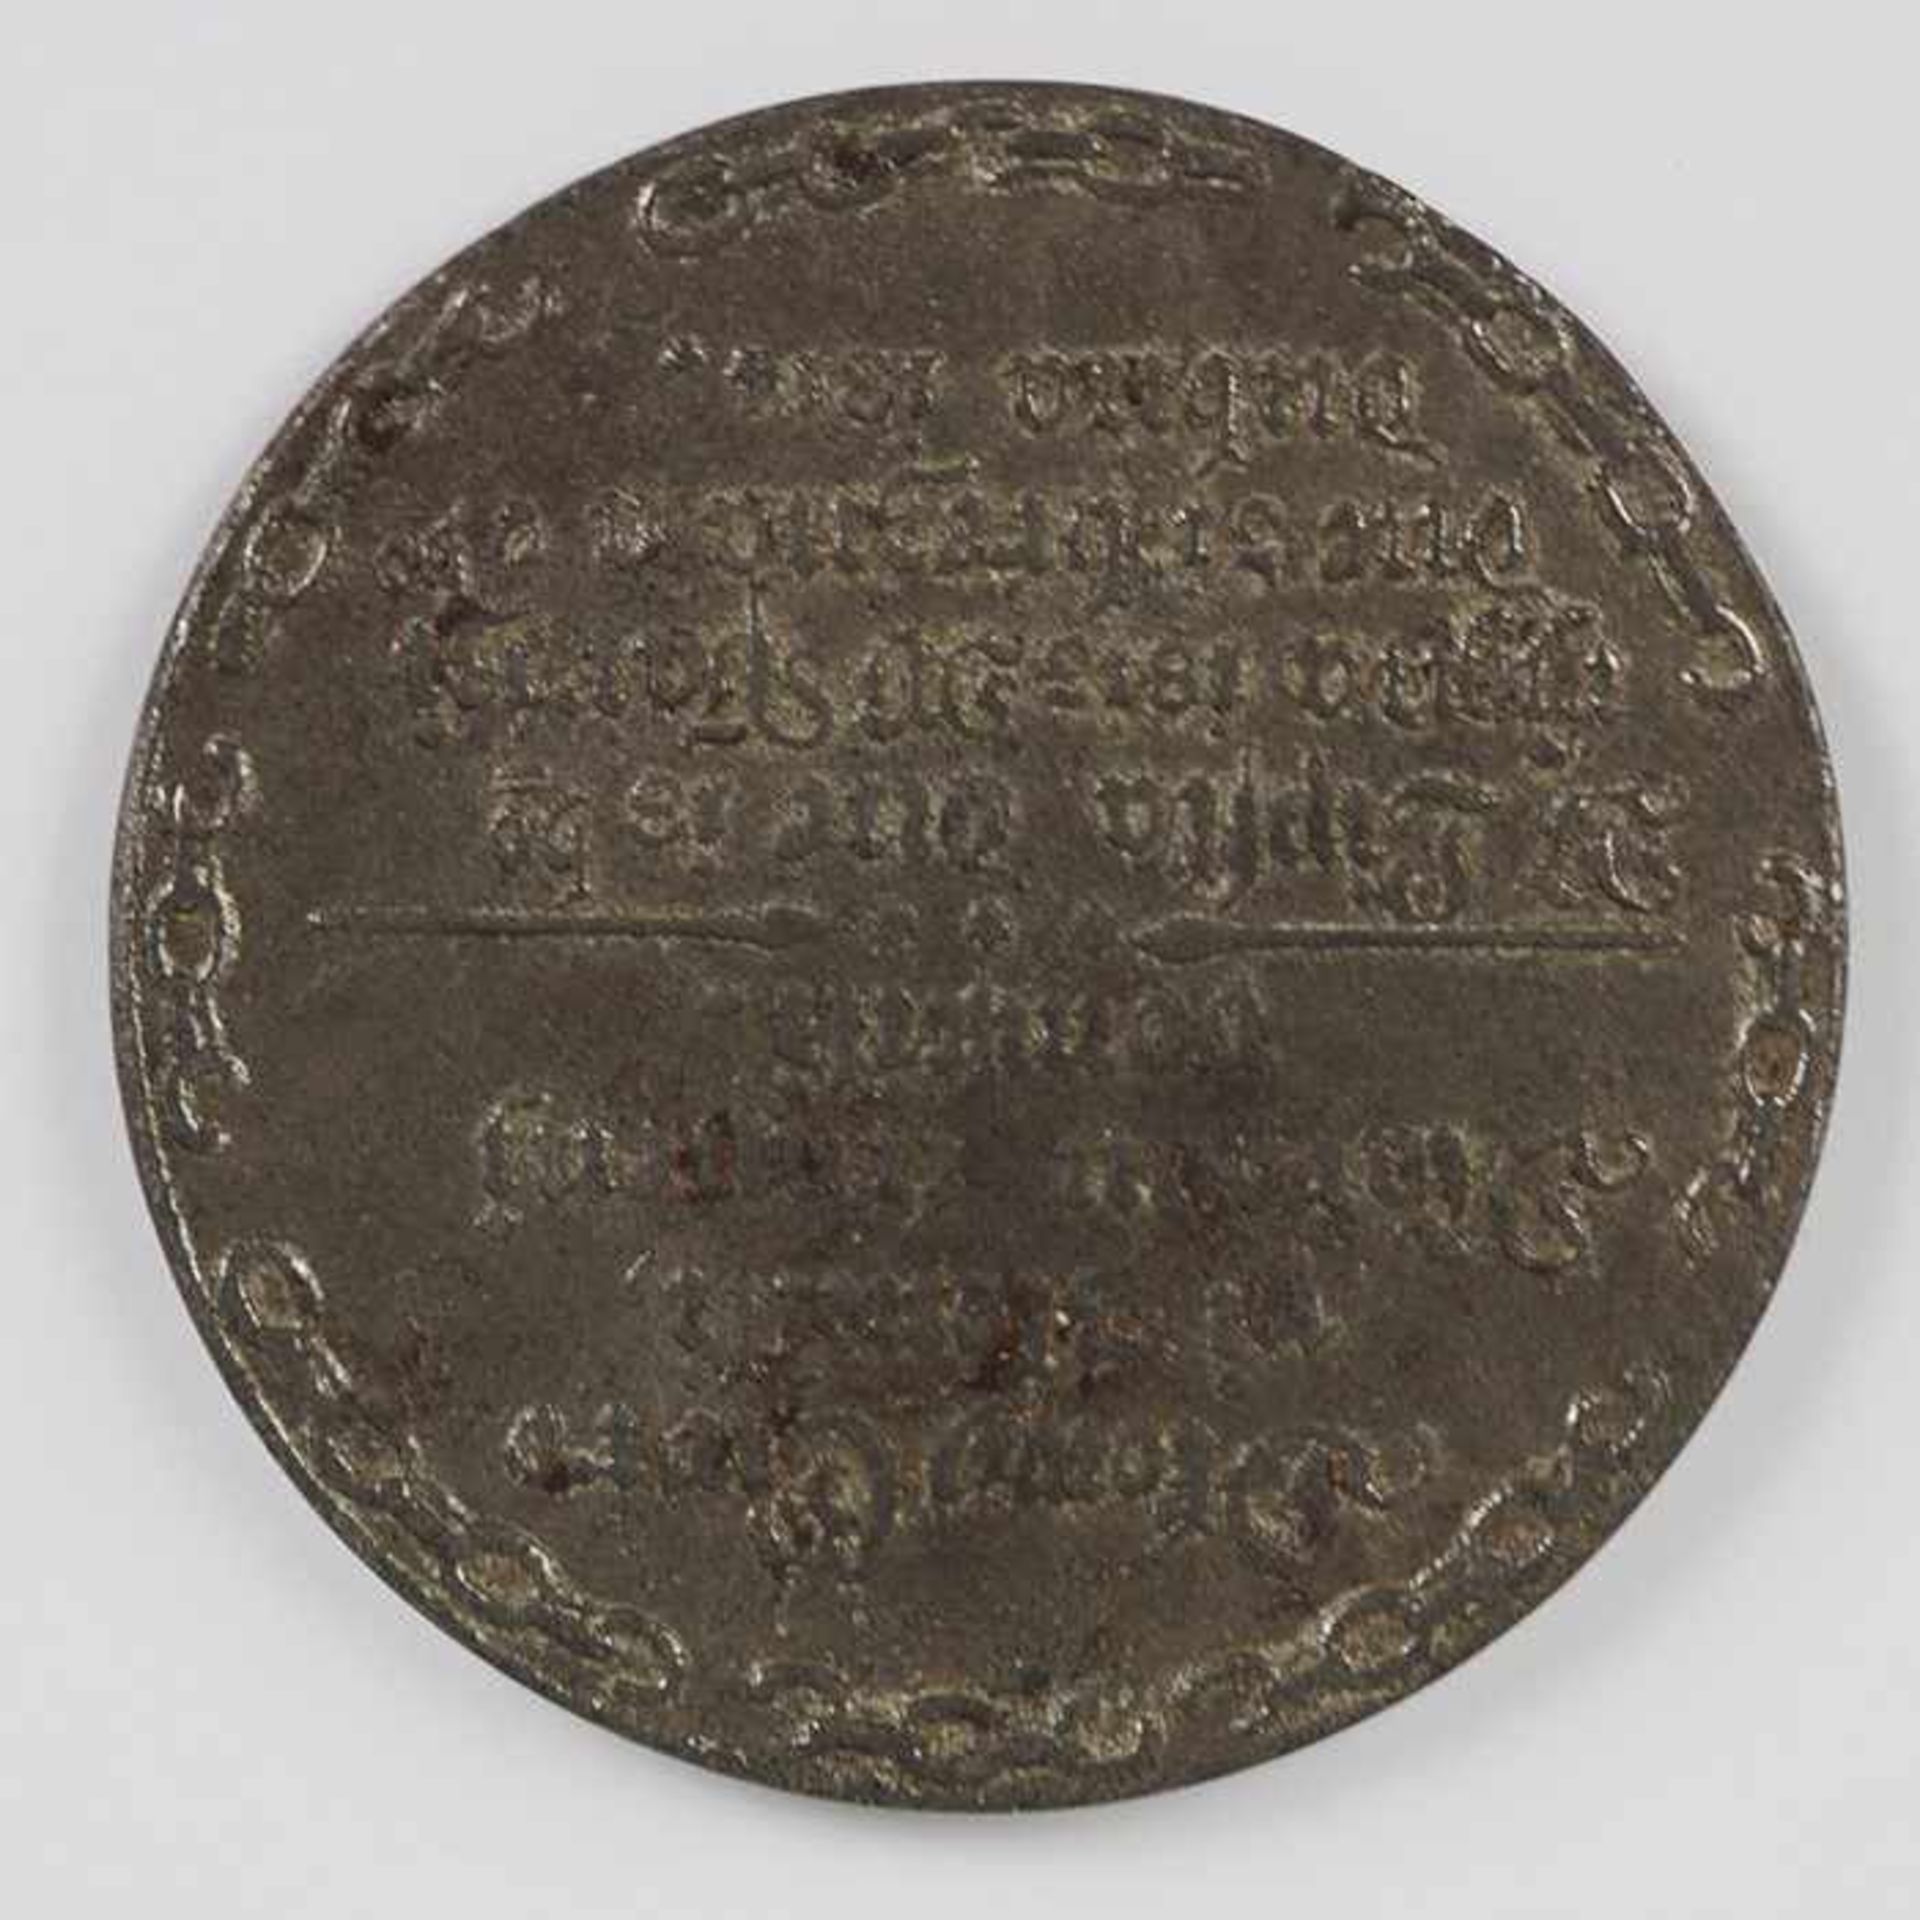 Medaille 1814unleserlich, wohl Slawisch, D 5,2 cm- - -20.00 % buyer's premium on the hammer - Bild 2 aus 2